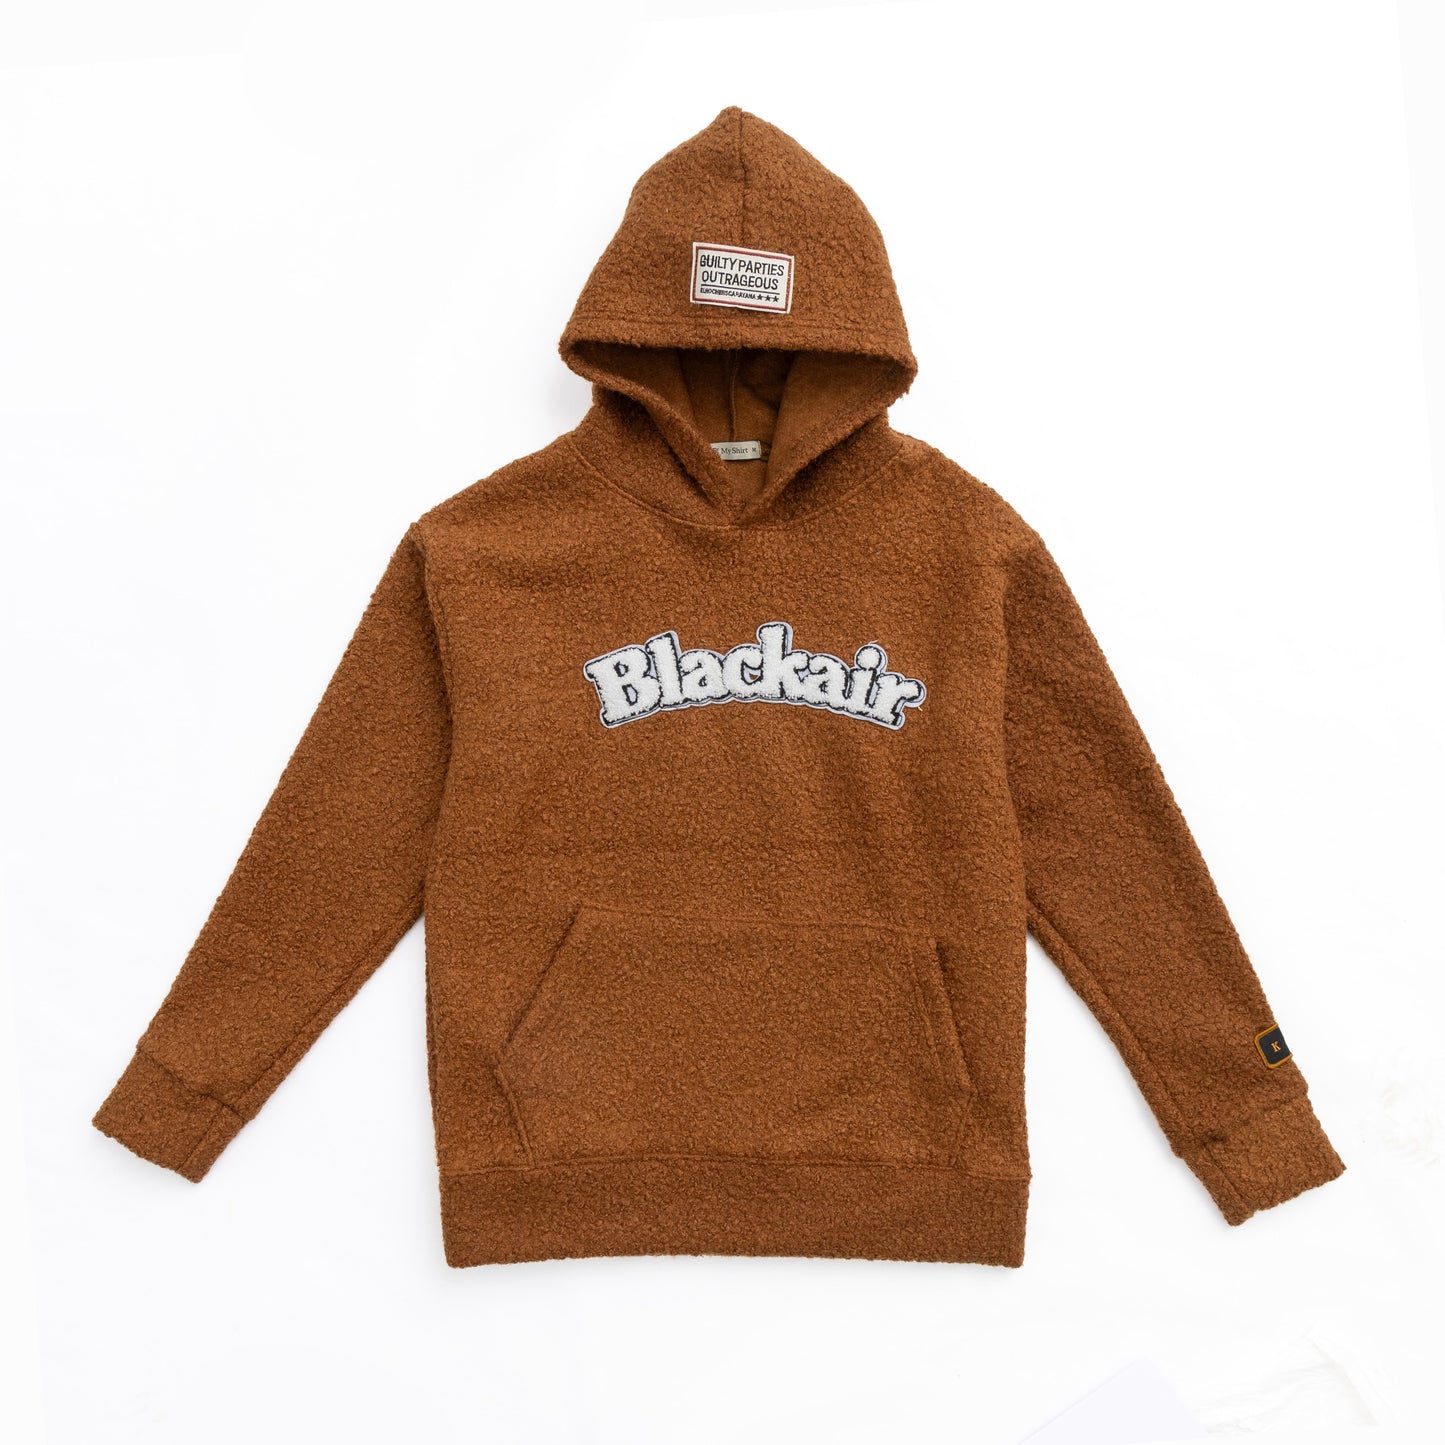 Brown teddy bear hoodie